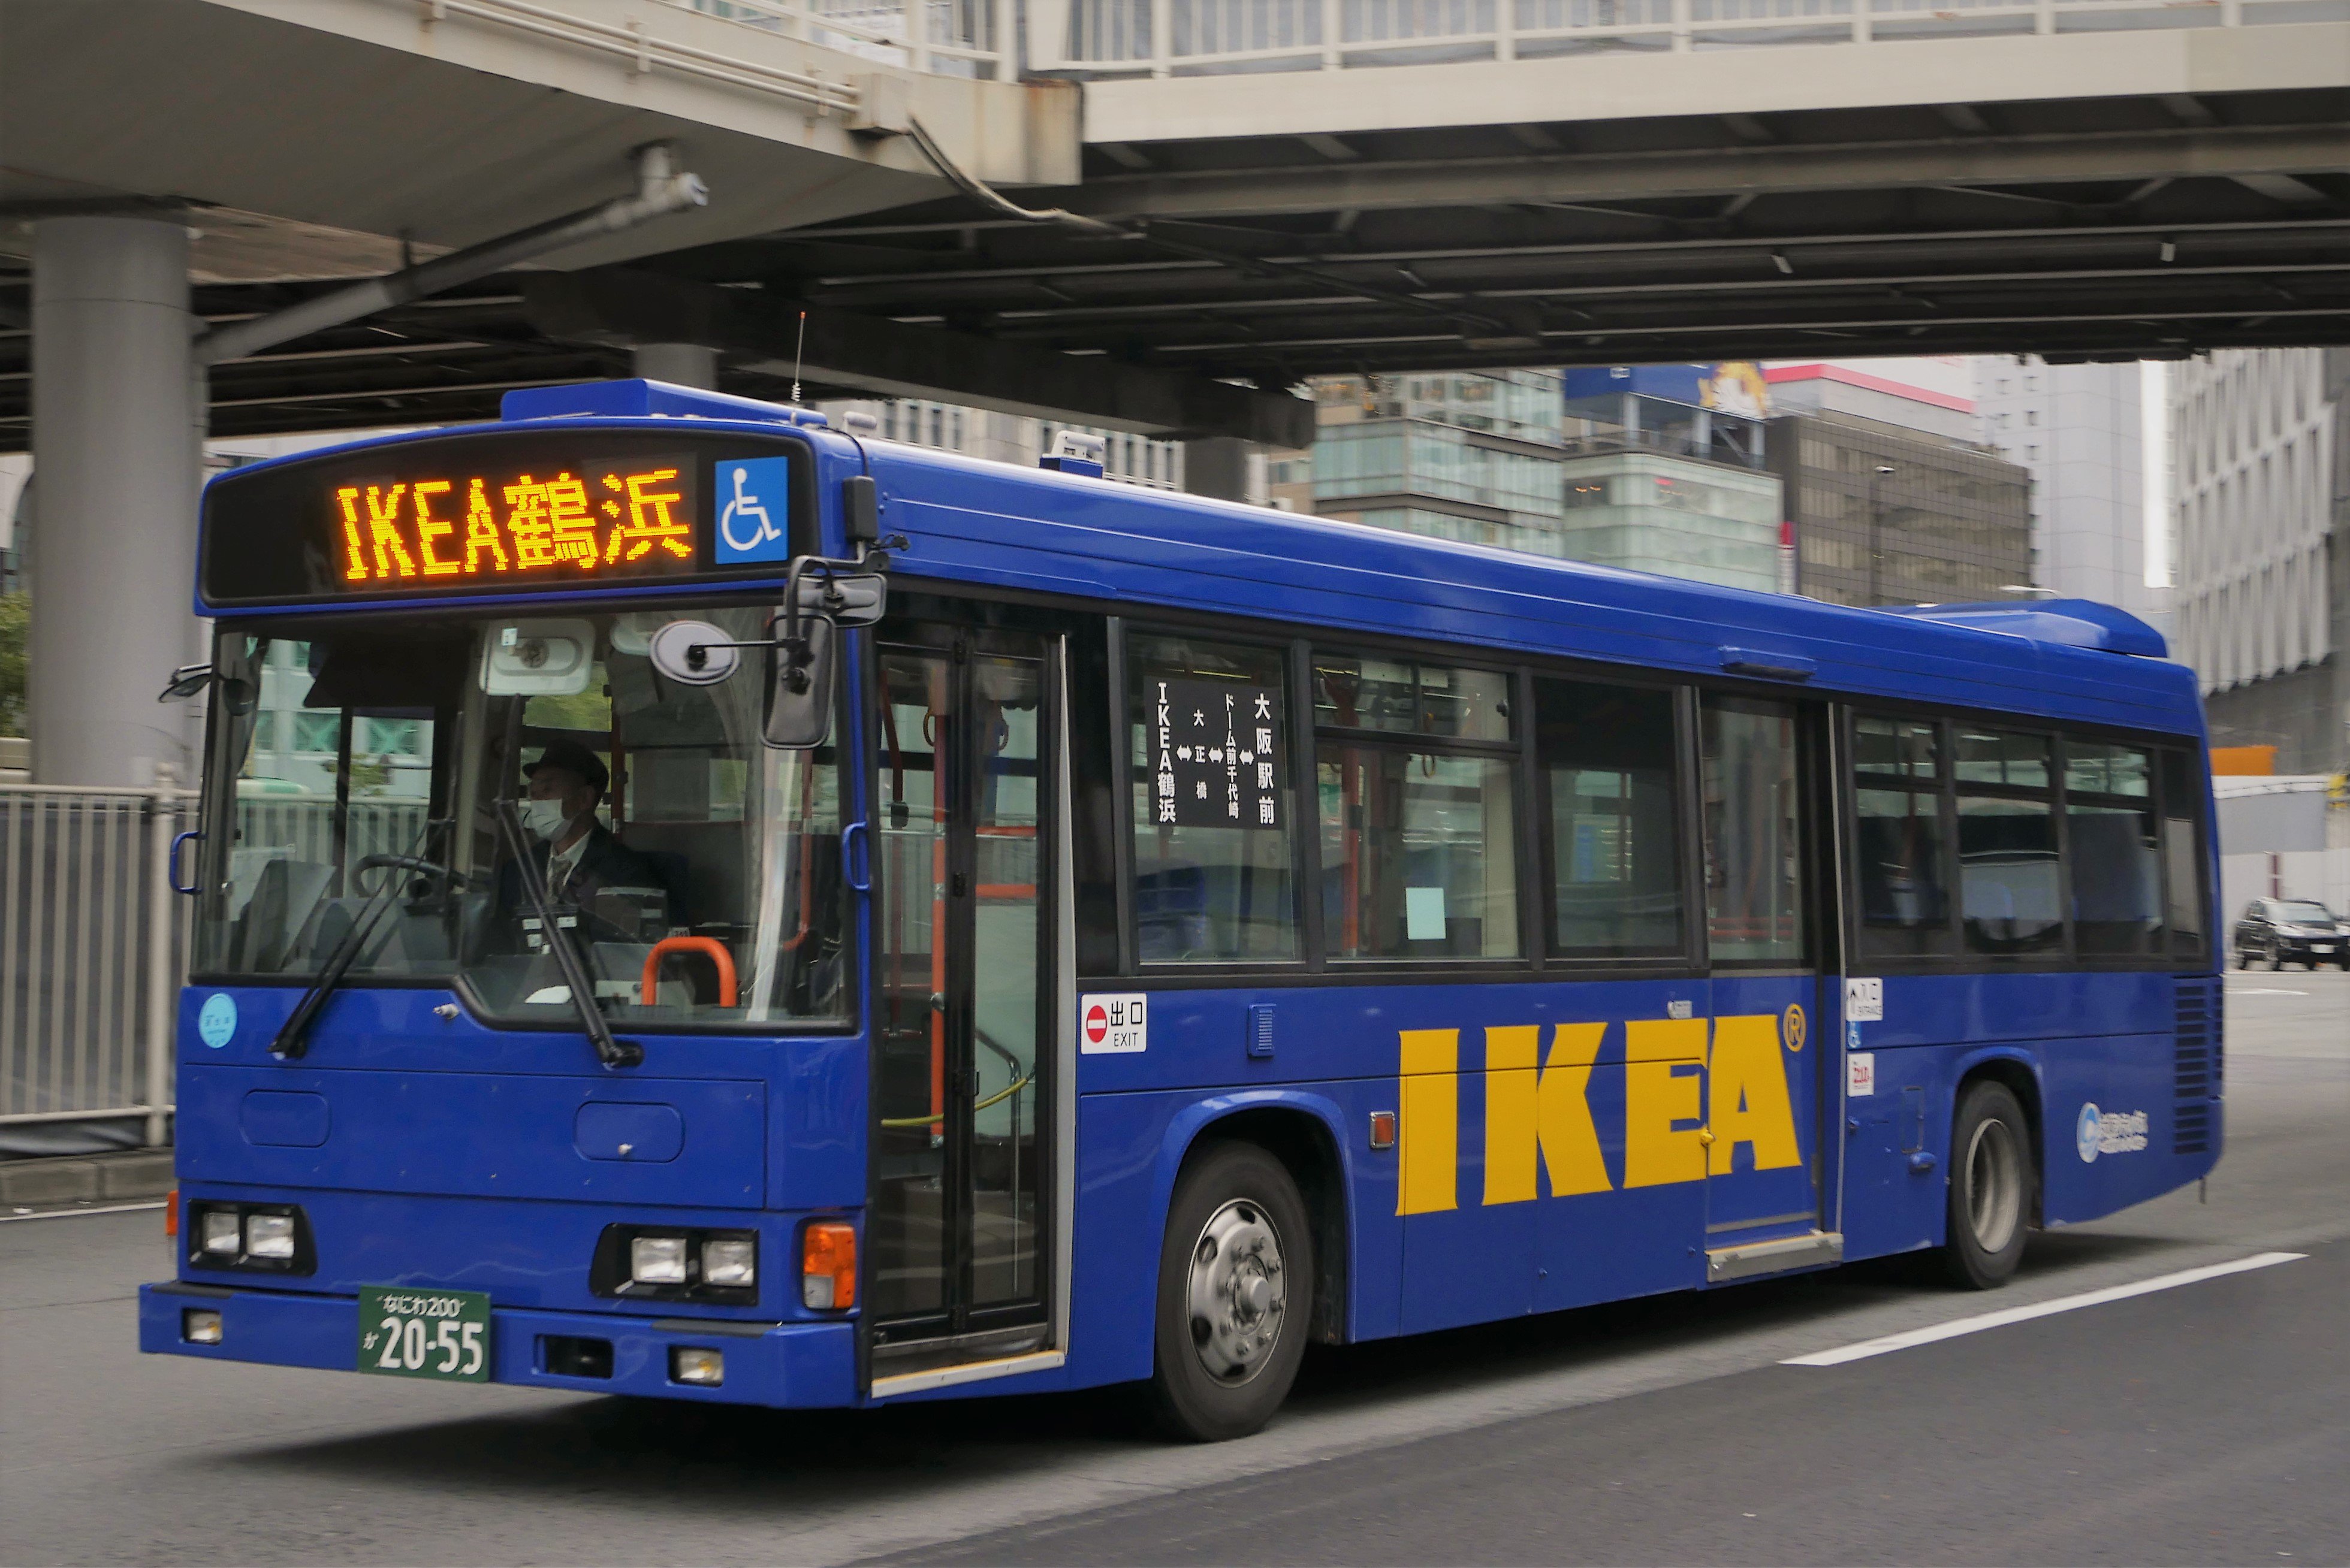 くるにん 03 23 大阪シティバス Ikea鶴浜ー大正express 91 1900 1901 55 大阪シティに7両いる都営中古のh代hr うち4両はikeaのシャトルバスとして稼働しています 側面窓がrpされているものとされていないものがあるようです T Co Kpapcdvt9v